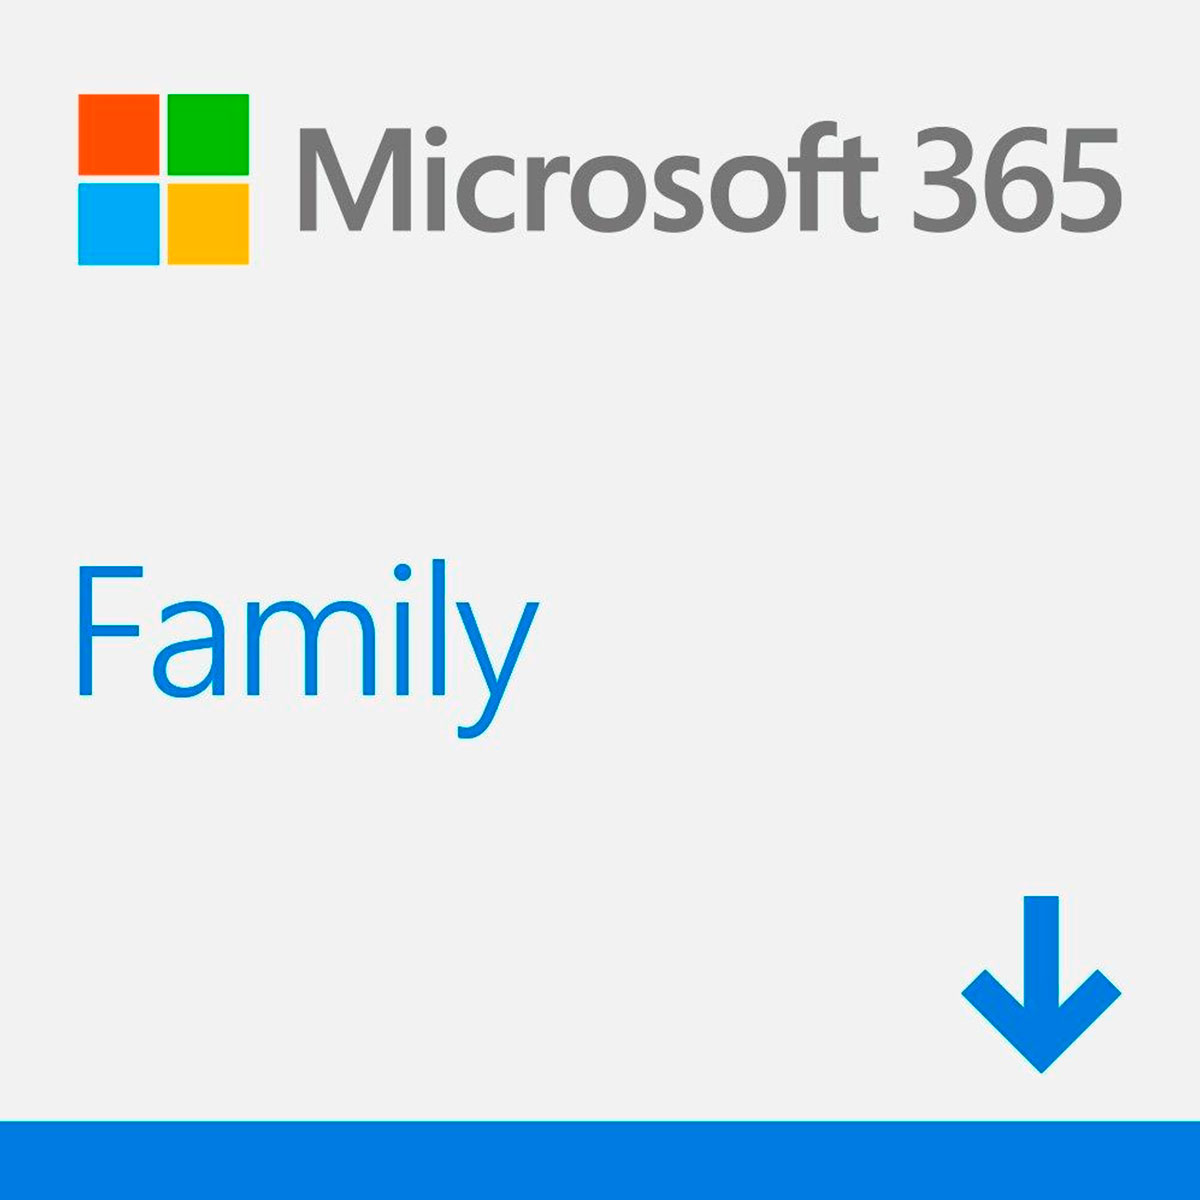 Microsoft Office 365 Family - Assinatura 12 meses para 6 usuários + 1 TB de Armazenamento One Drive - PC, Mac, iOS e Android - 6GQ-01405 - Versão Download